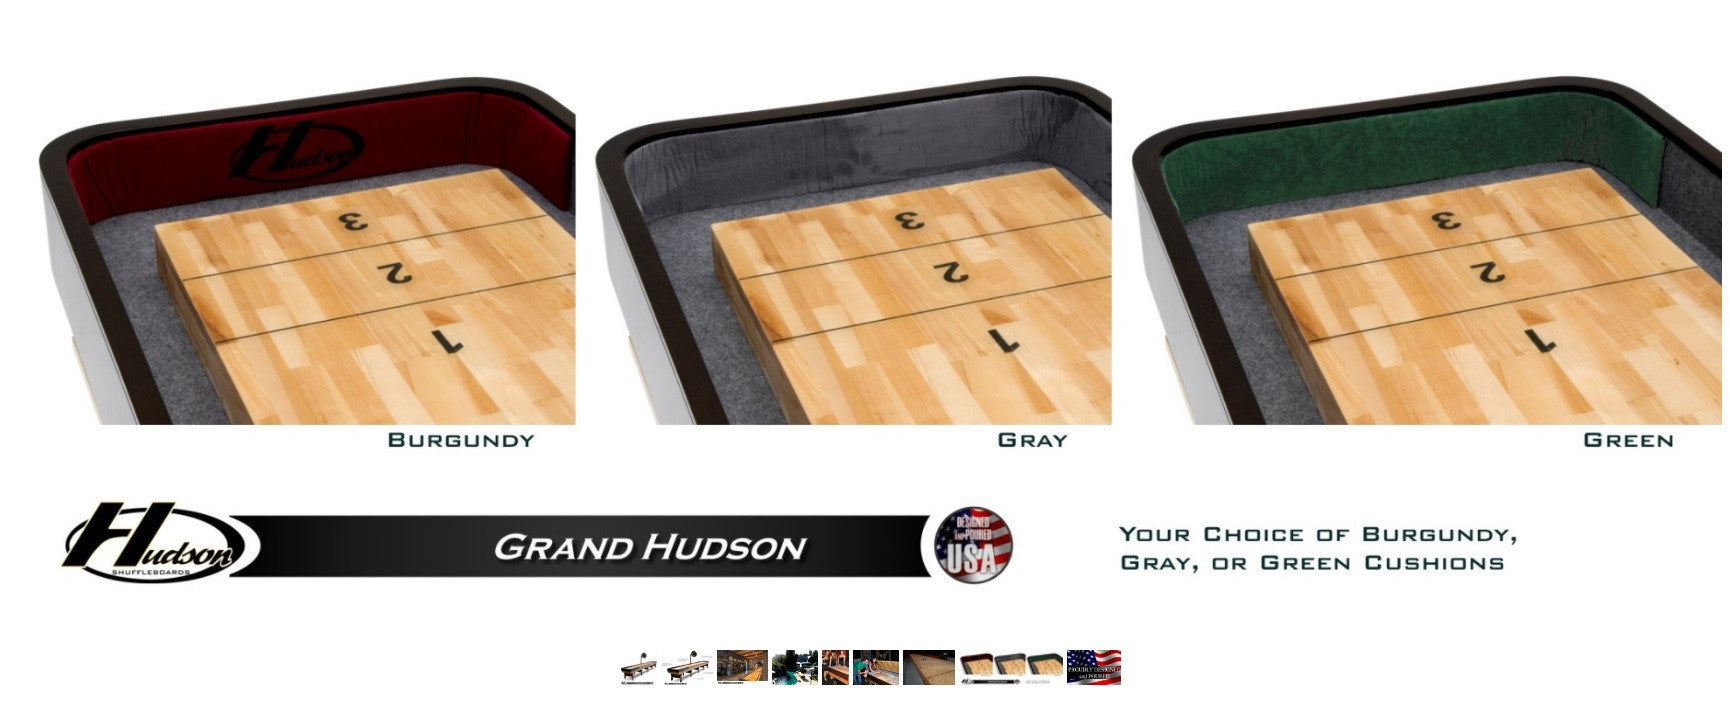 Hudson 12' Grand Hudson Shuffleboard